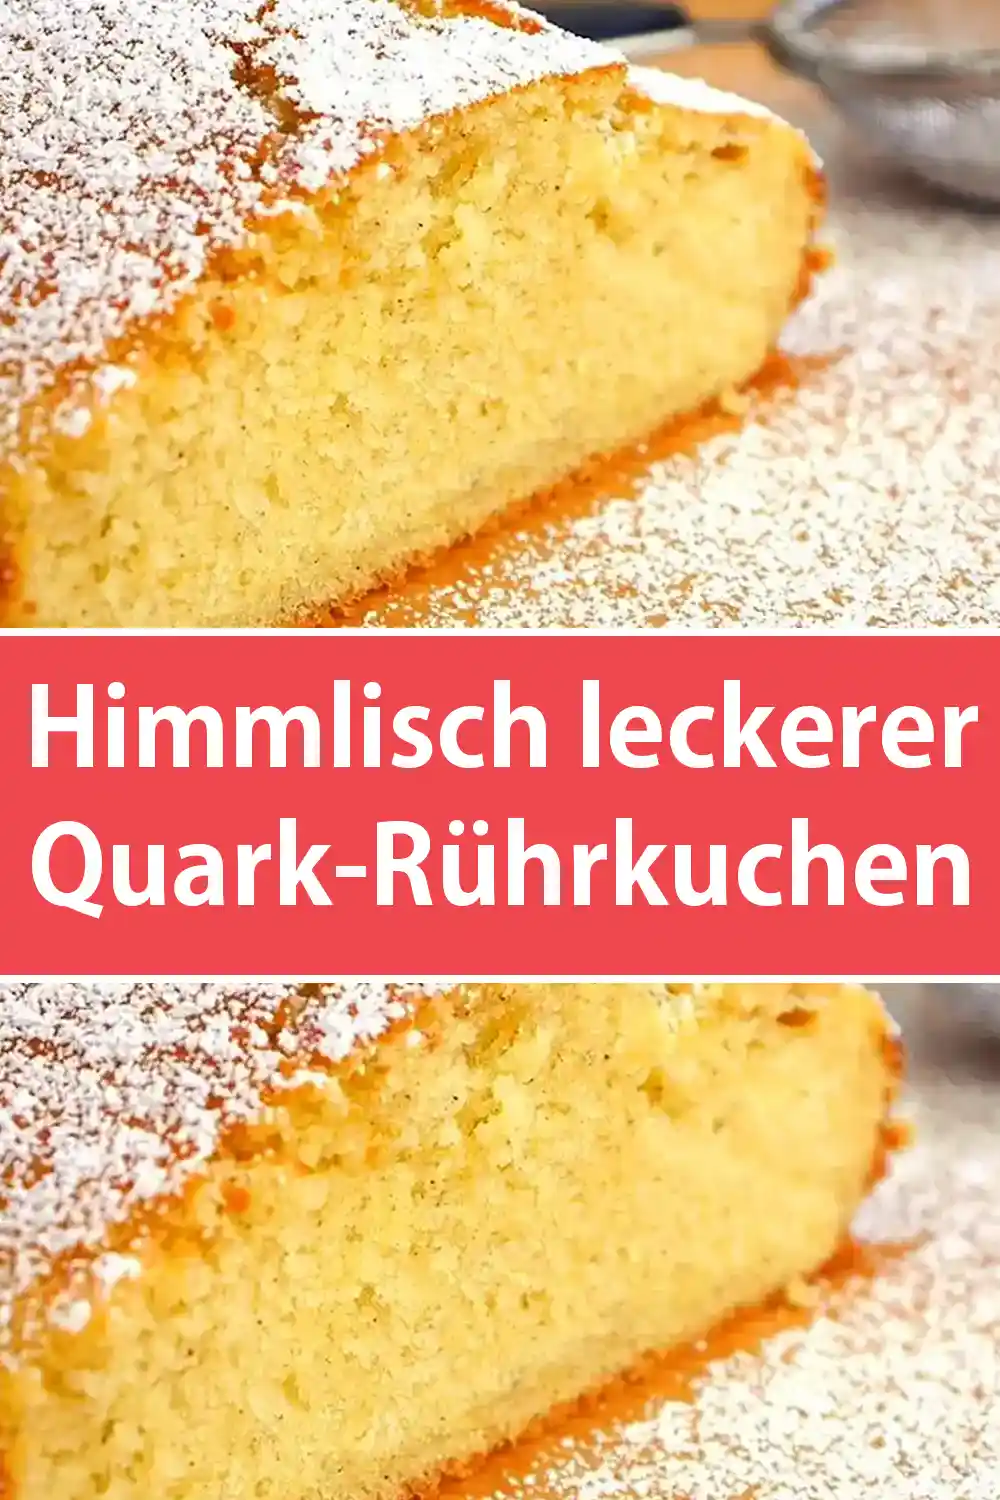 Himmlisch leckerer Quark-Rührkuchen Rezept!